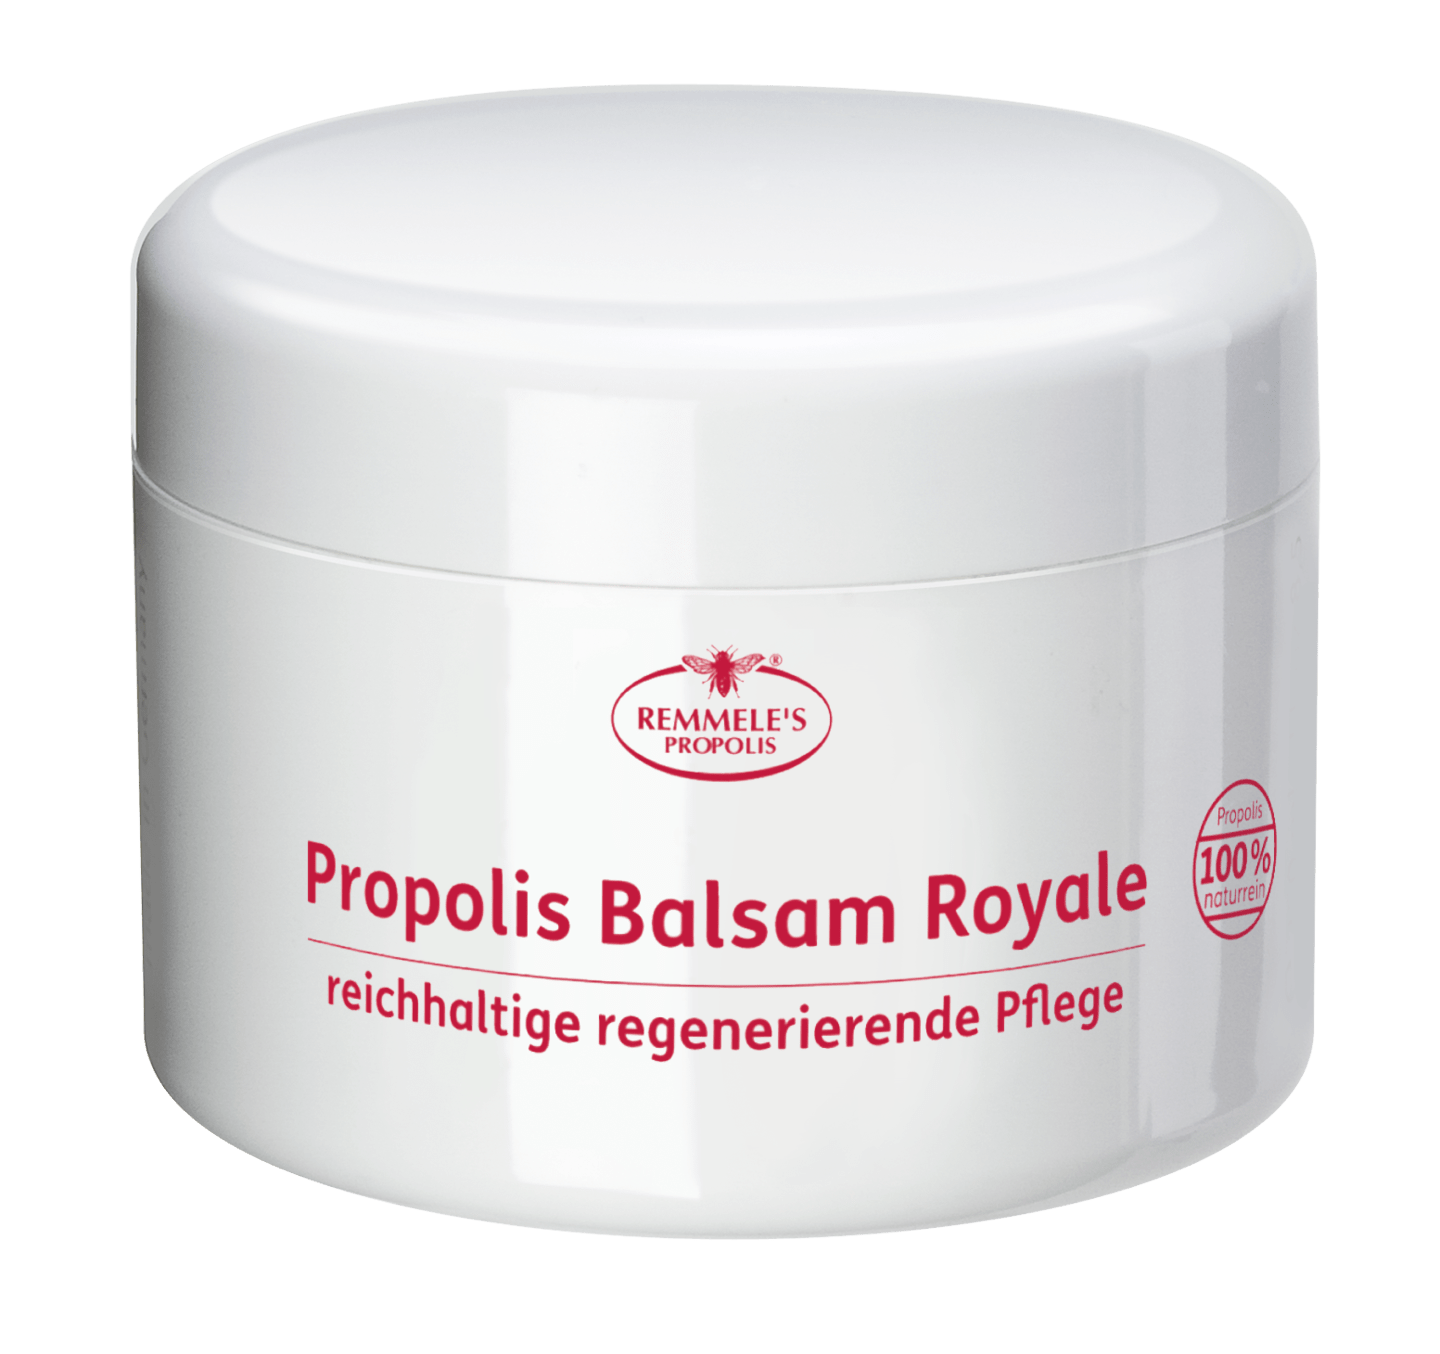 Remmele's Propolis - Propolis Balsam Royale, 250 ml